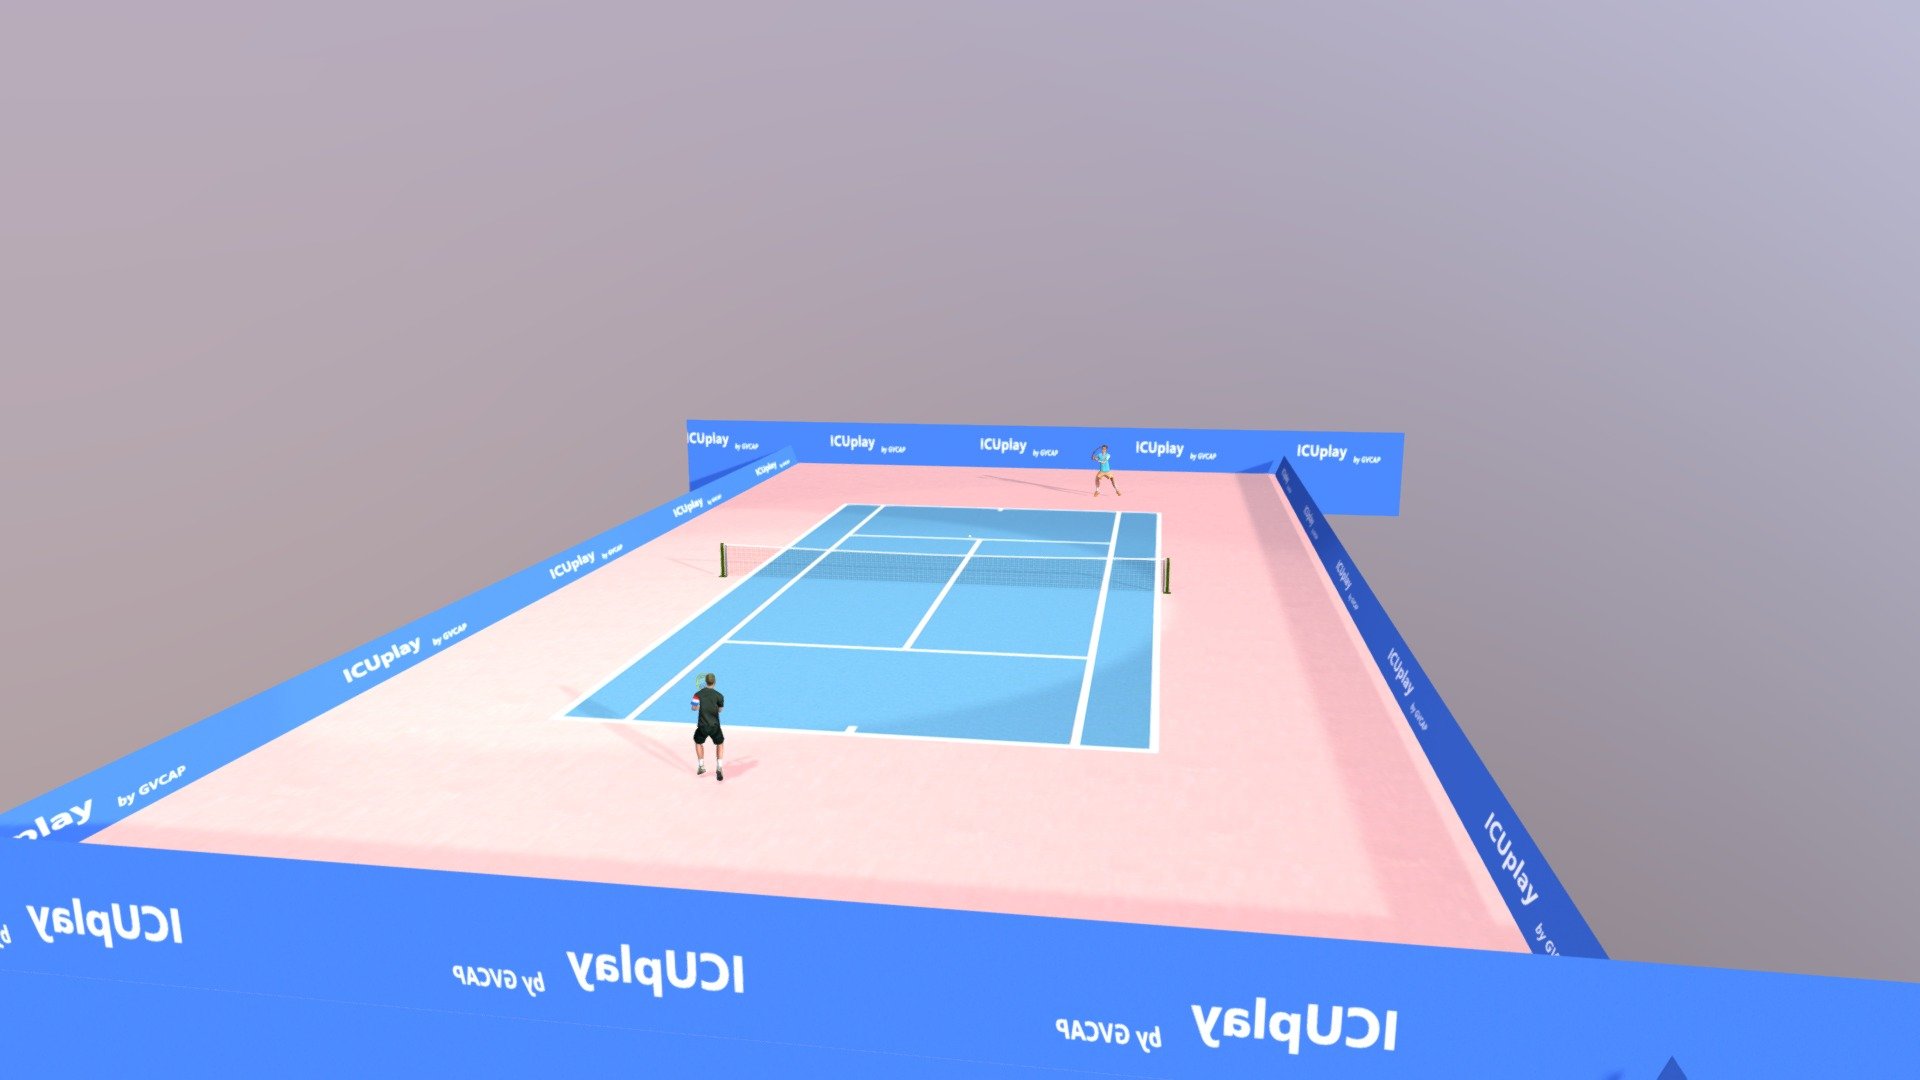 professionnal tennis - 3D model by gvcap 3d model